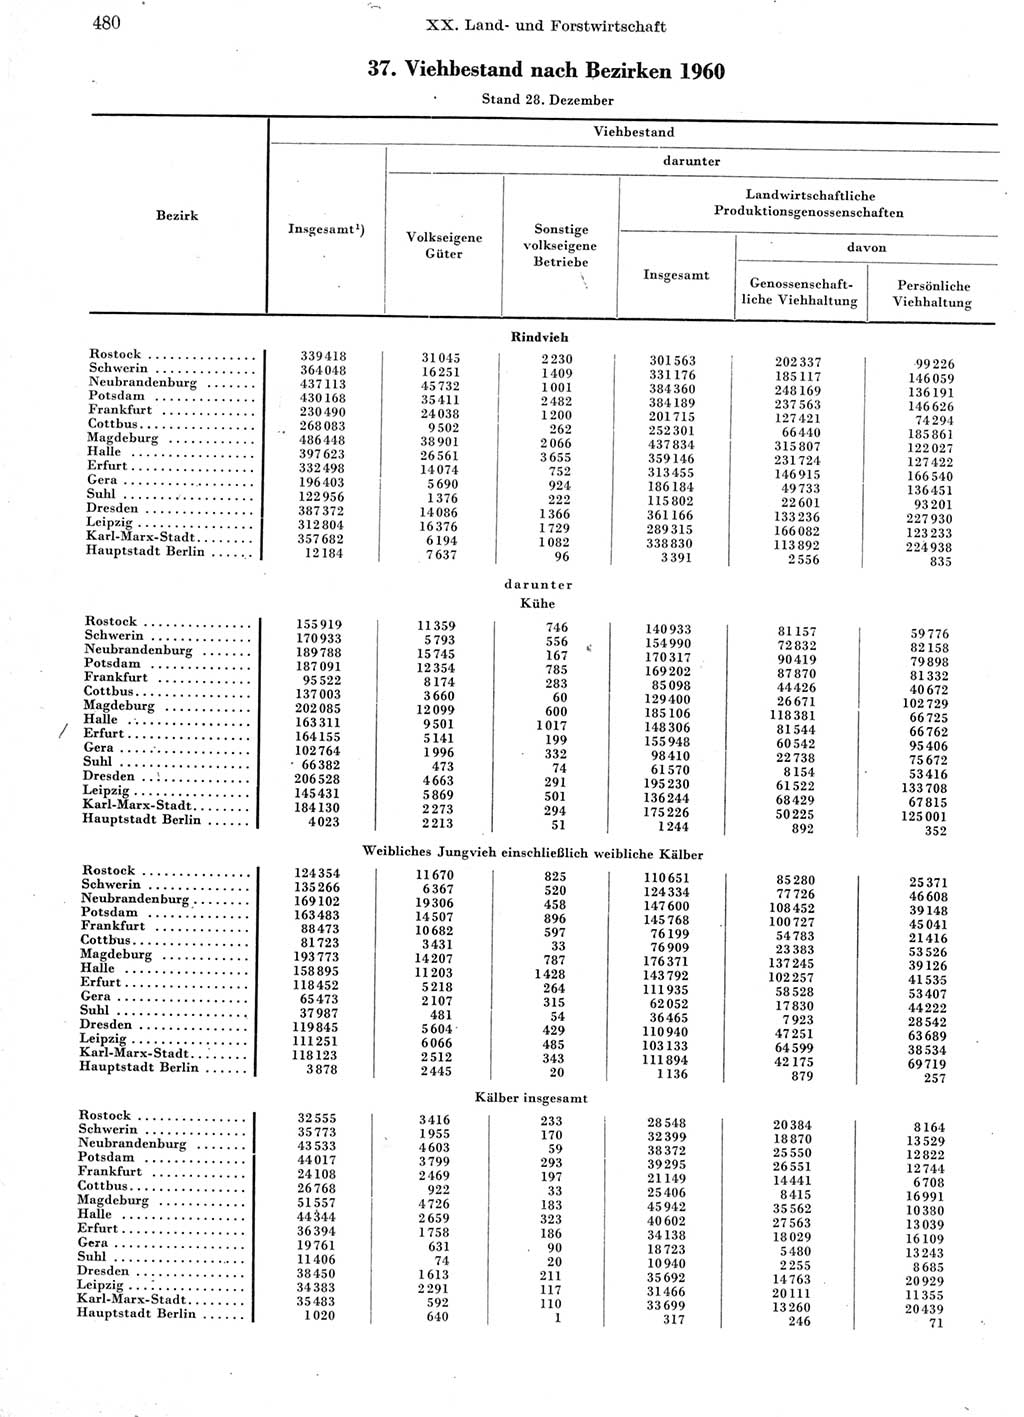 Statistisches Jahrbuch der Deutschen Demokratischen Republik (DDR) 1960-1961, Seite 480 (Stat. Jb. DDR 1960-1961, S. 480)